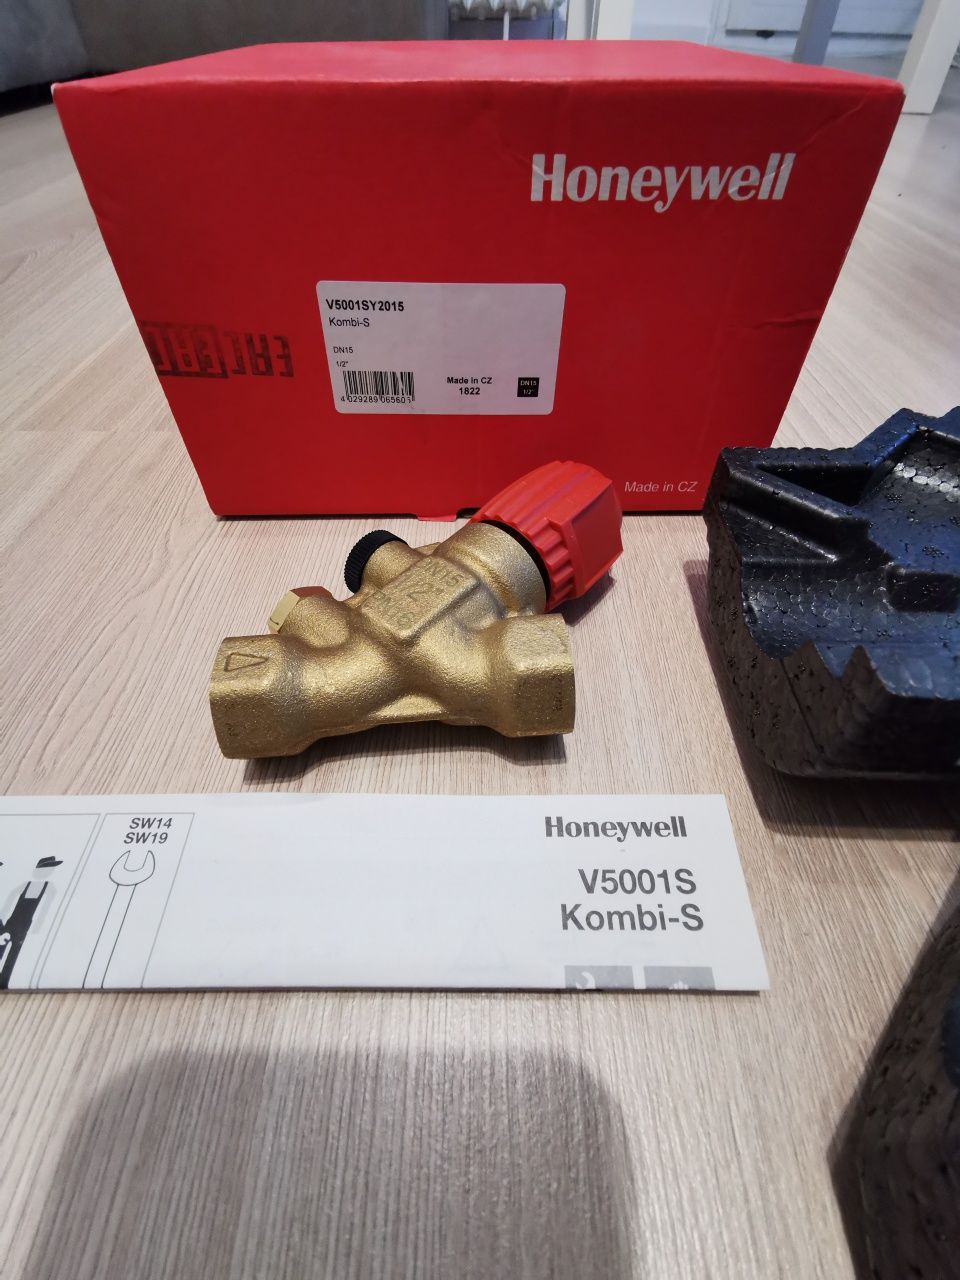 Zawór odcinający Honeywell Kombi-S, V5001SY2015.